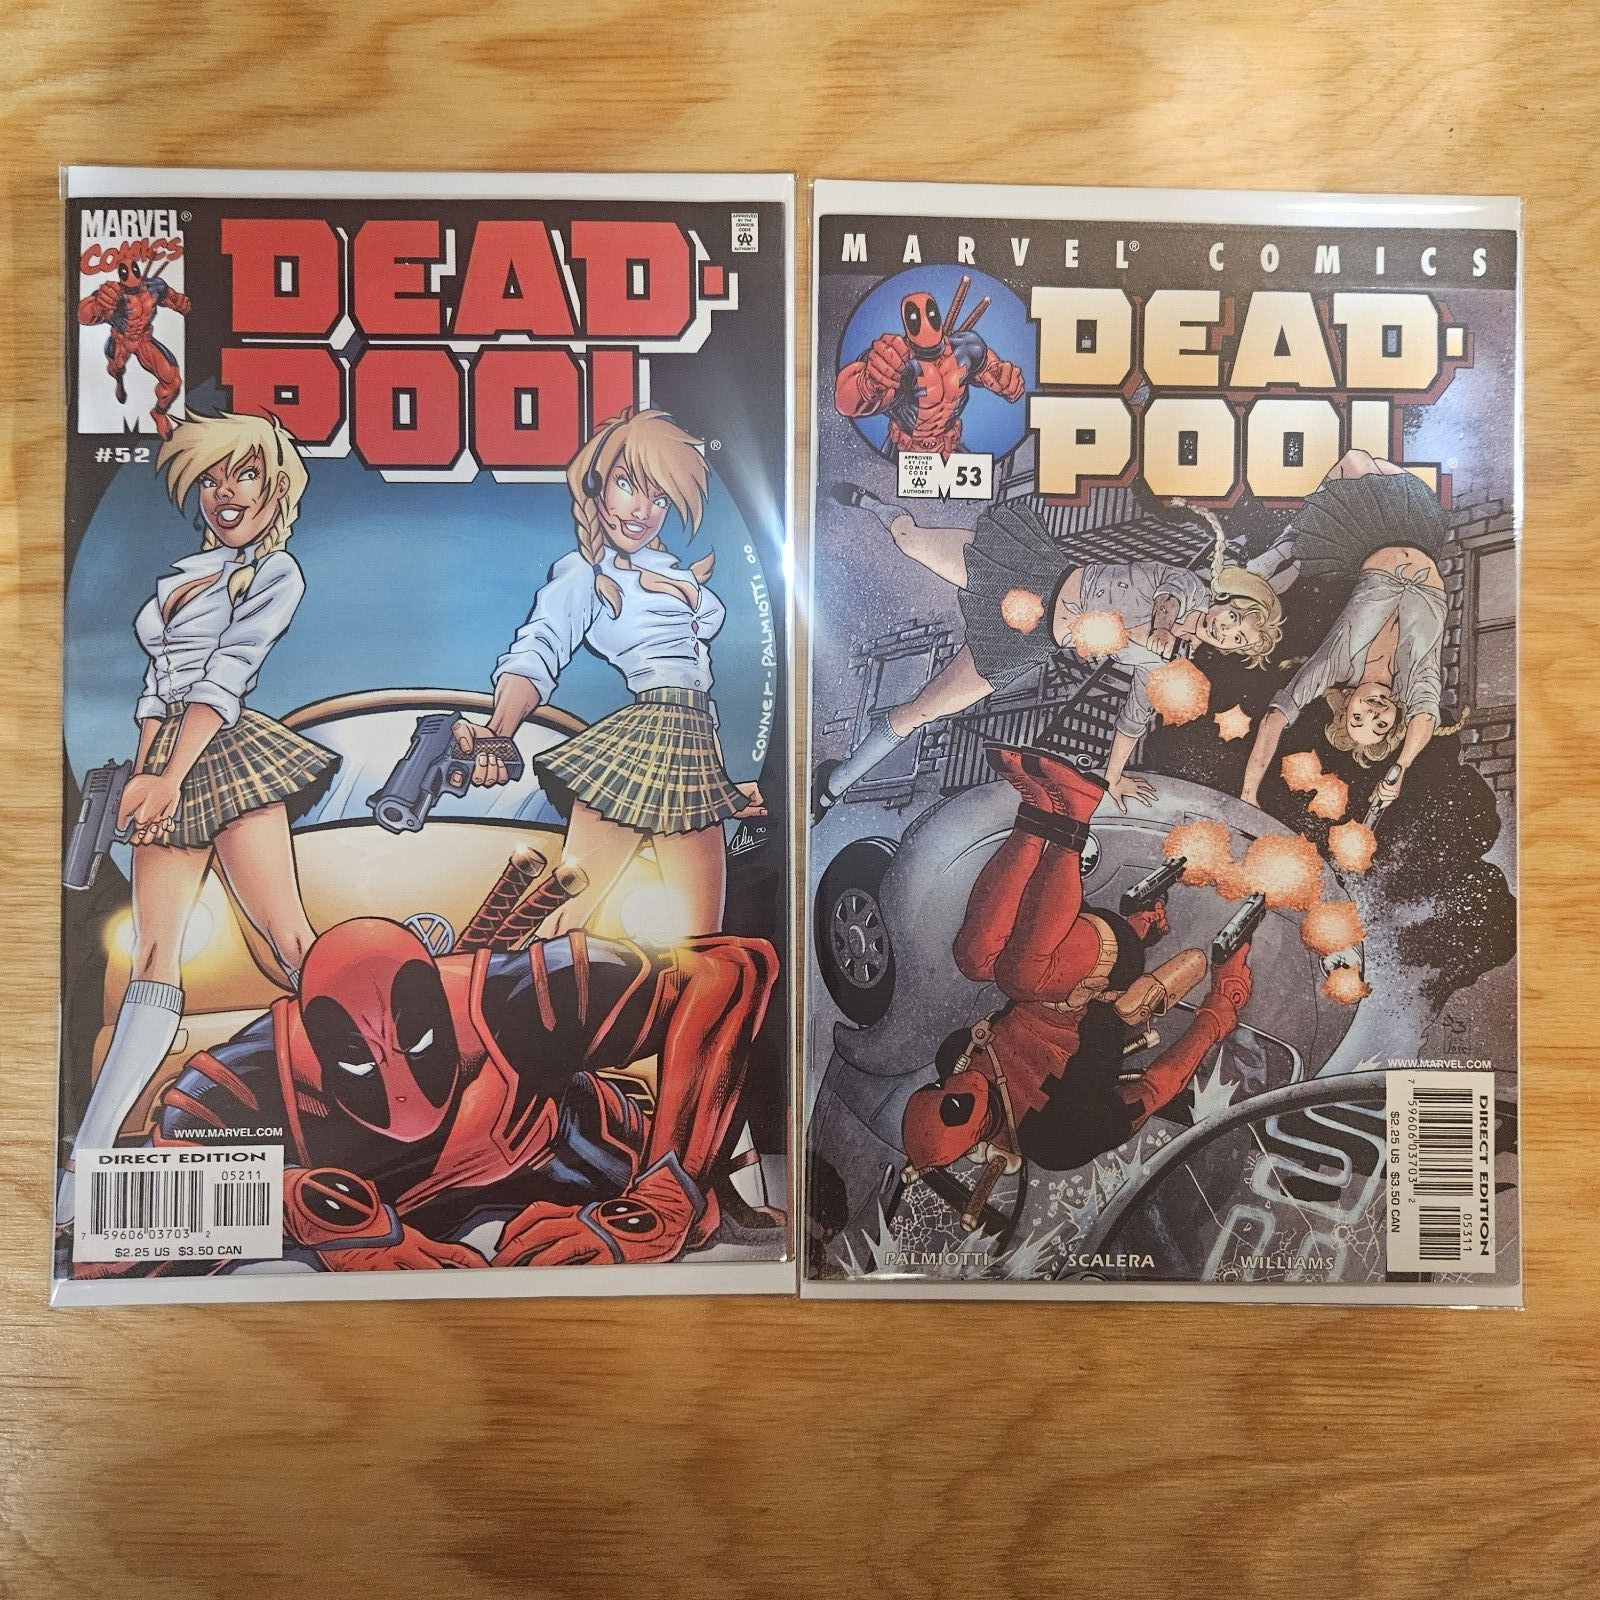 Deadpool #52 #53 (1st Series) 2001 Marvel Comics